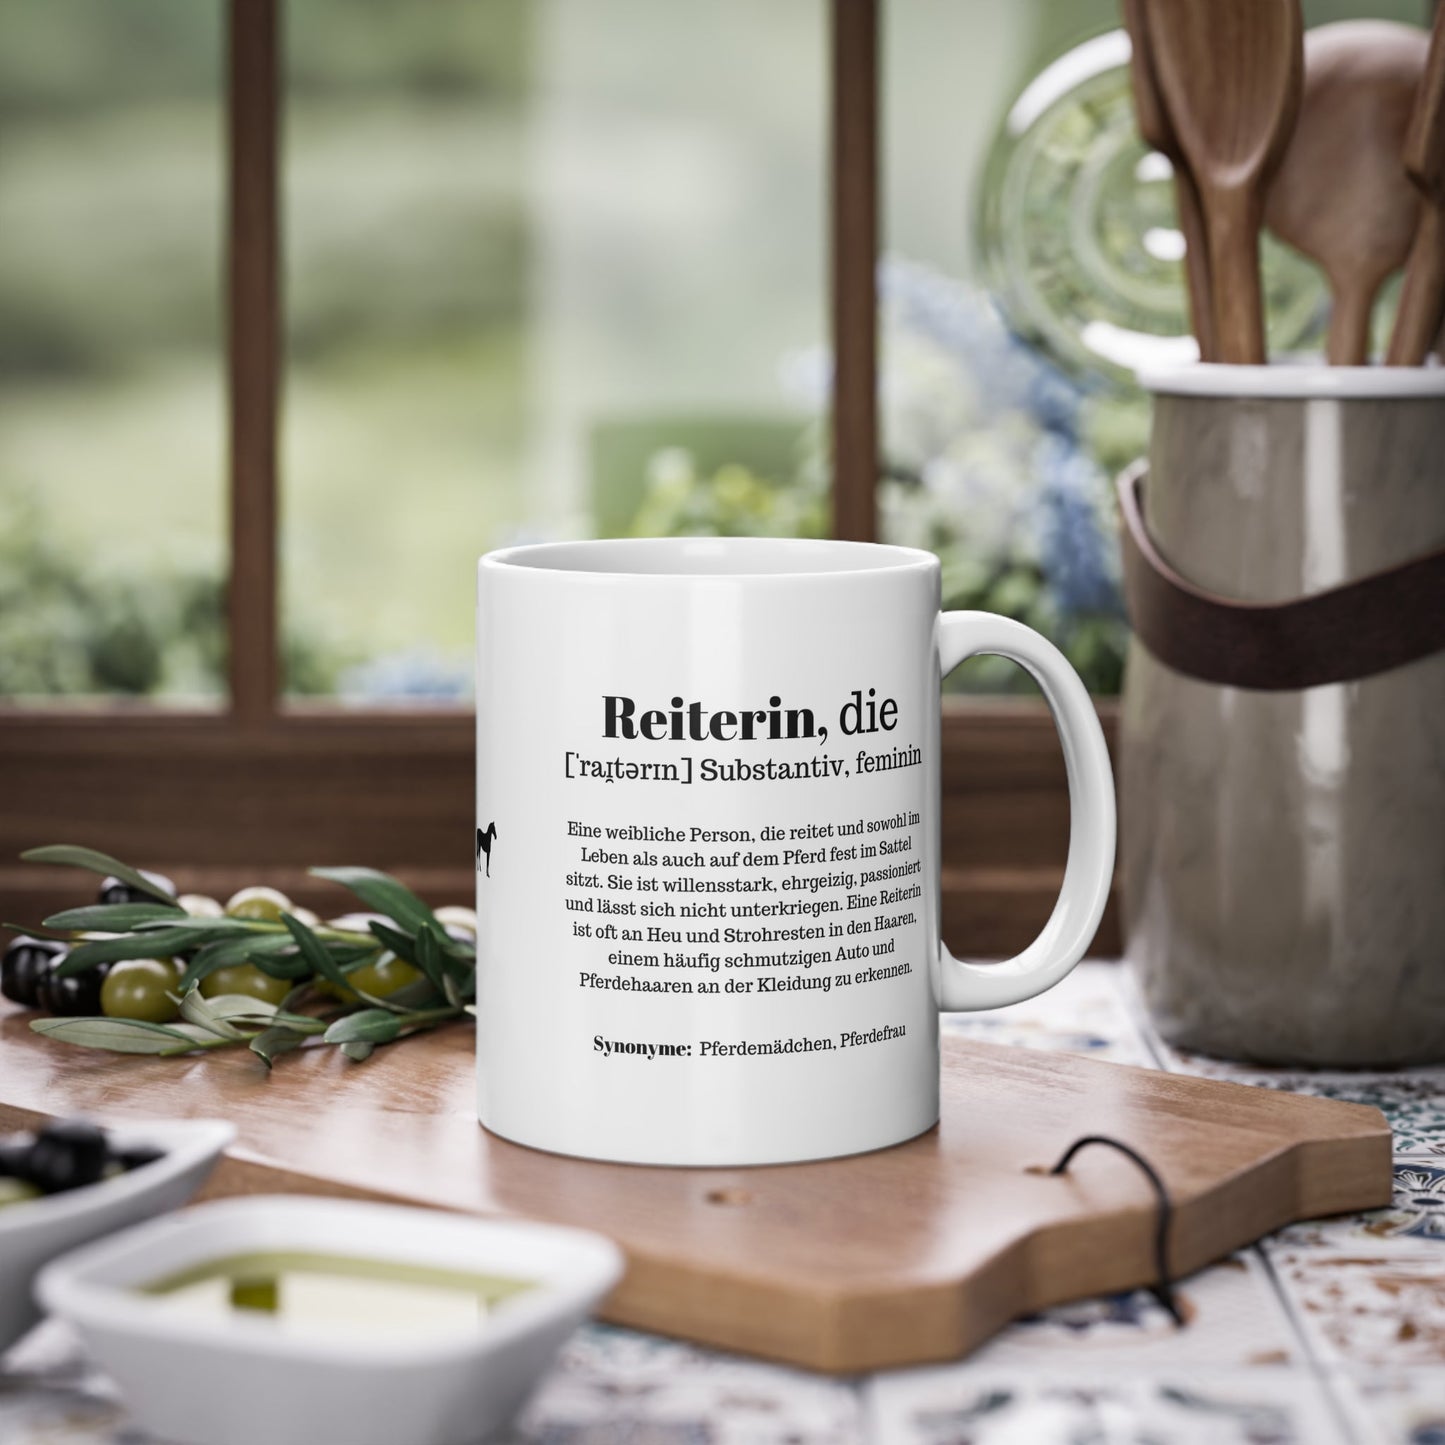 Die Reiterin Kaffeetasse - Das Geschenk für Pferdemädchen und Reiterinnen - Handvollhufeisen Shop